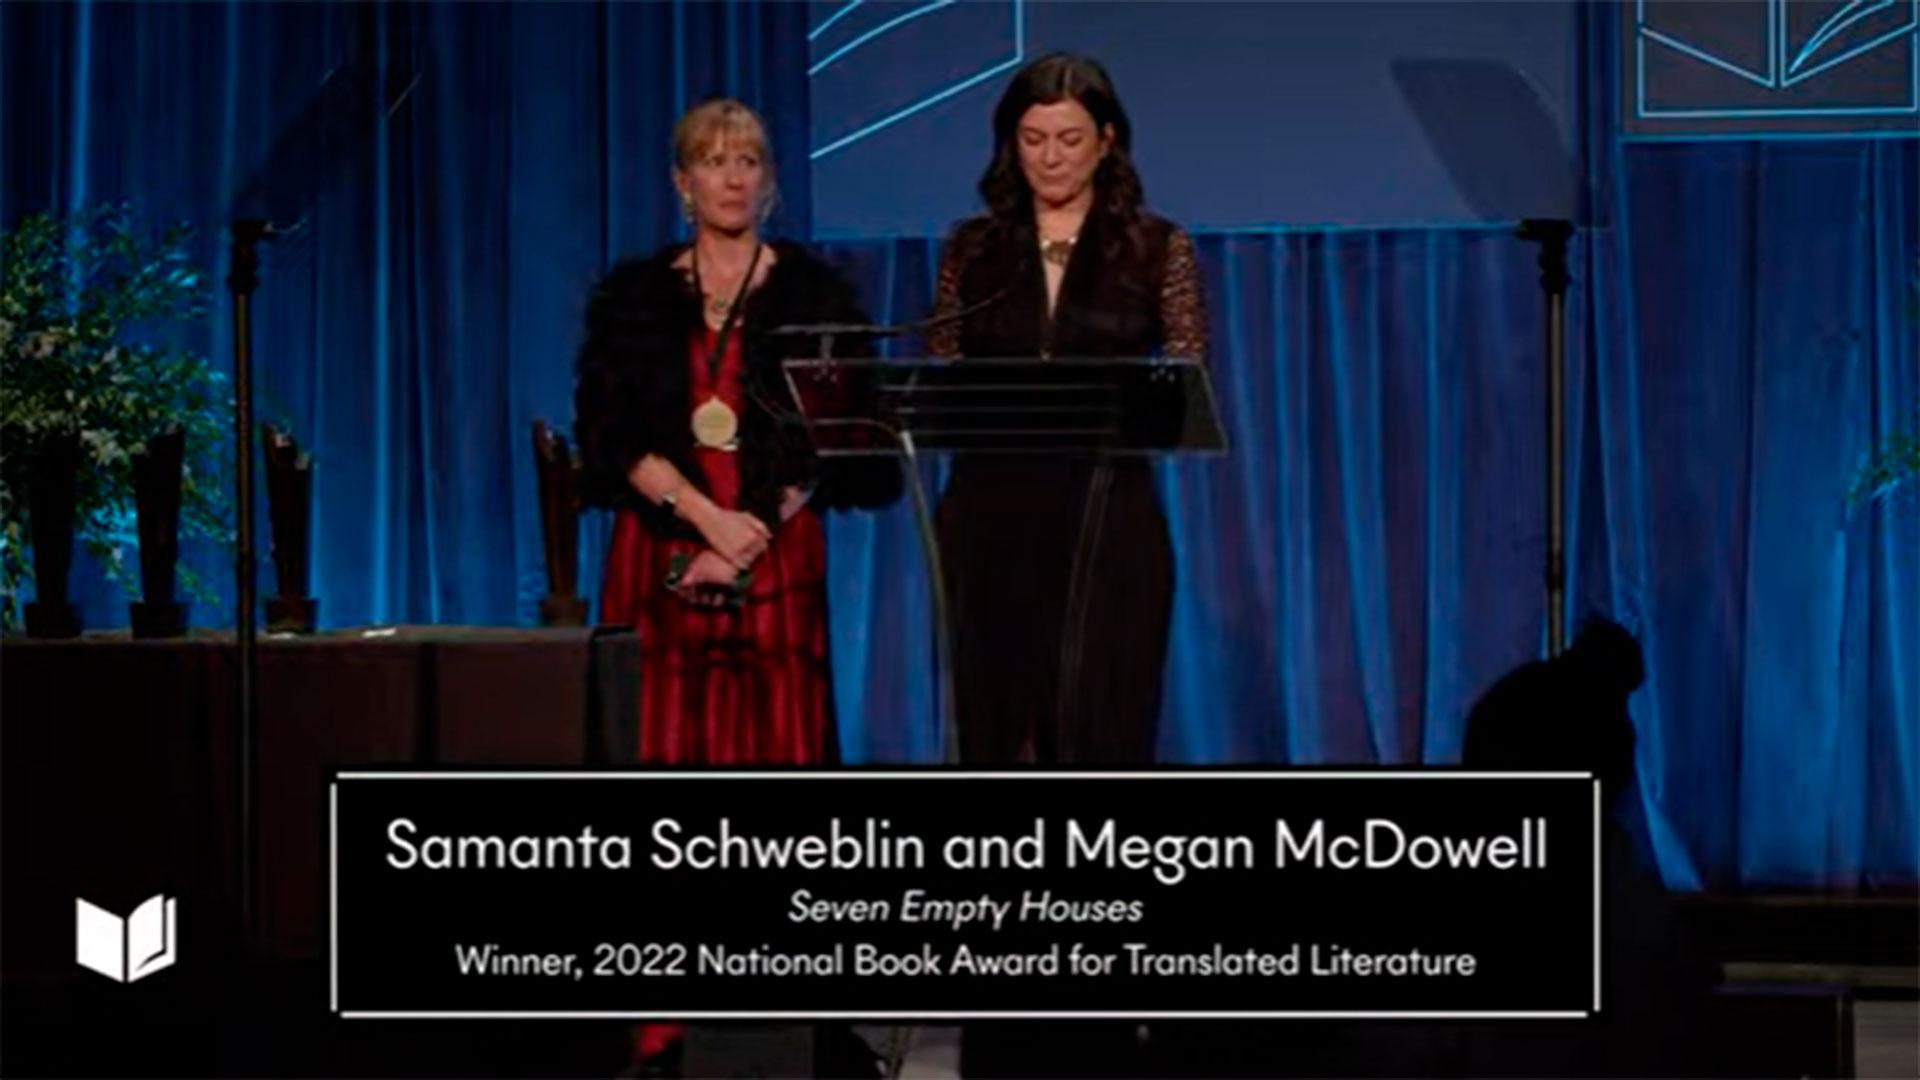 Samantha Schweblin ganó el prestigioso National Book Award, en la categoría “literatura traducida”, por su libro de cuentos Siete casas vacías. Sólo un argentino había obtenido antes esa distinción. Era Julio Cortázar